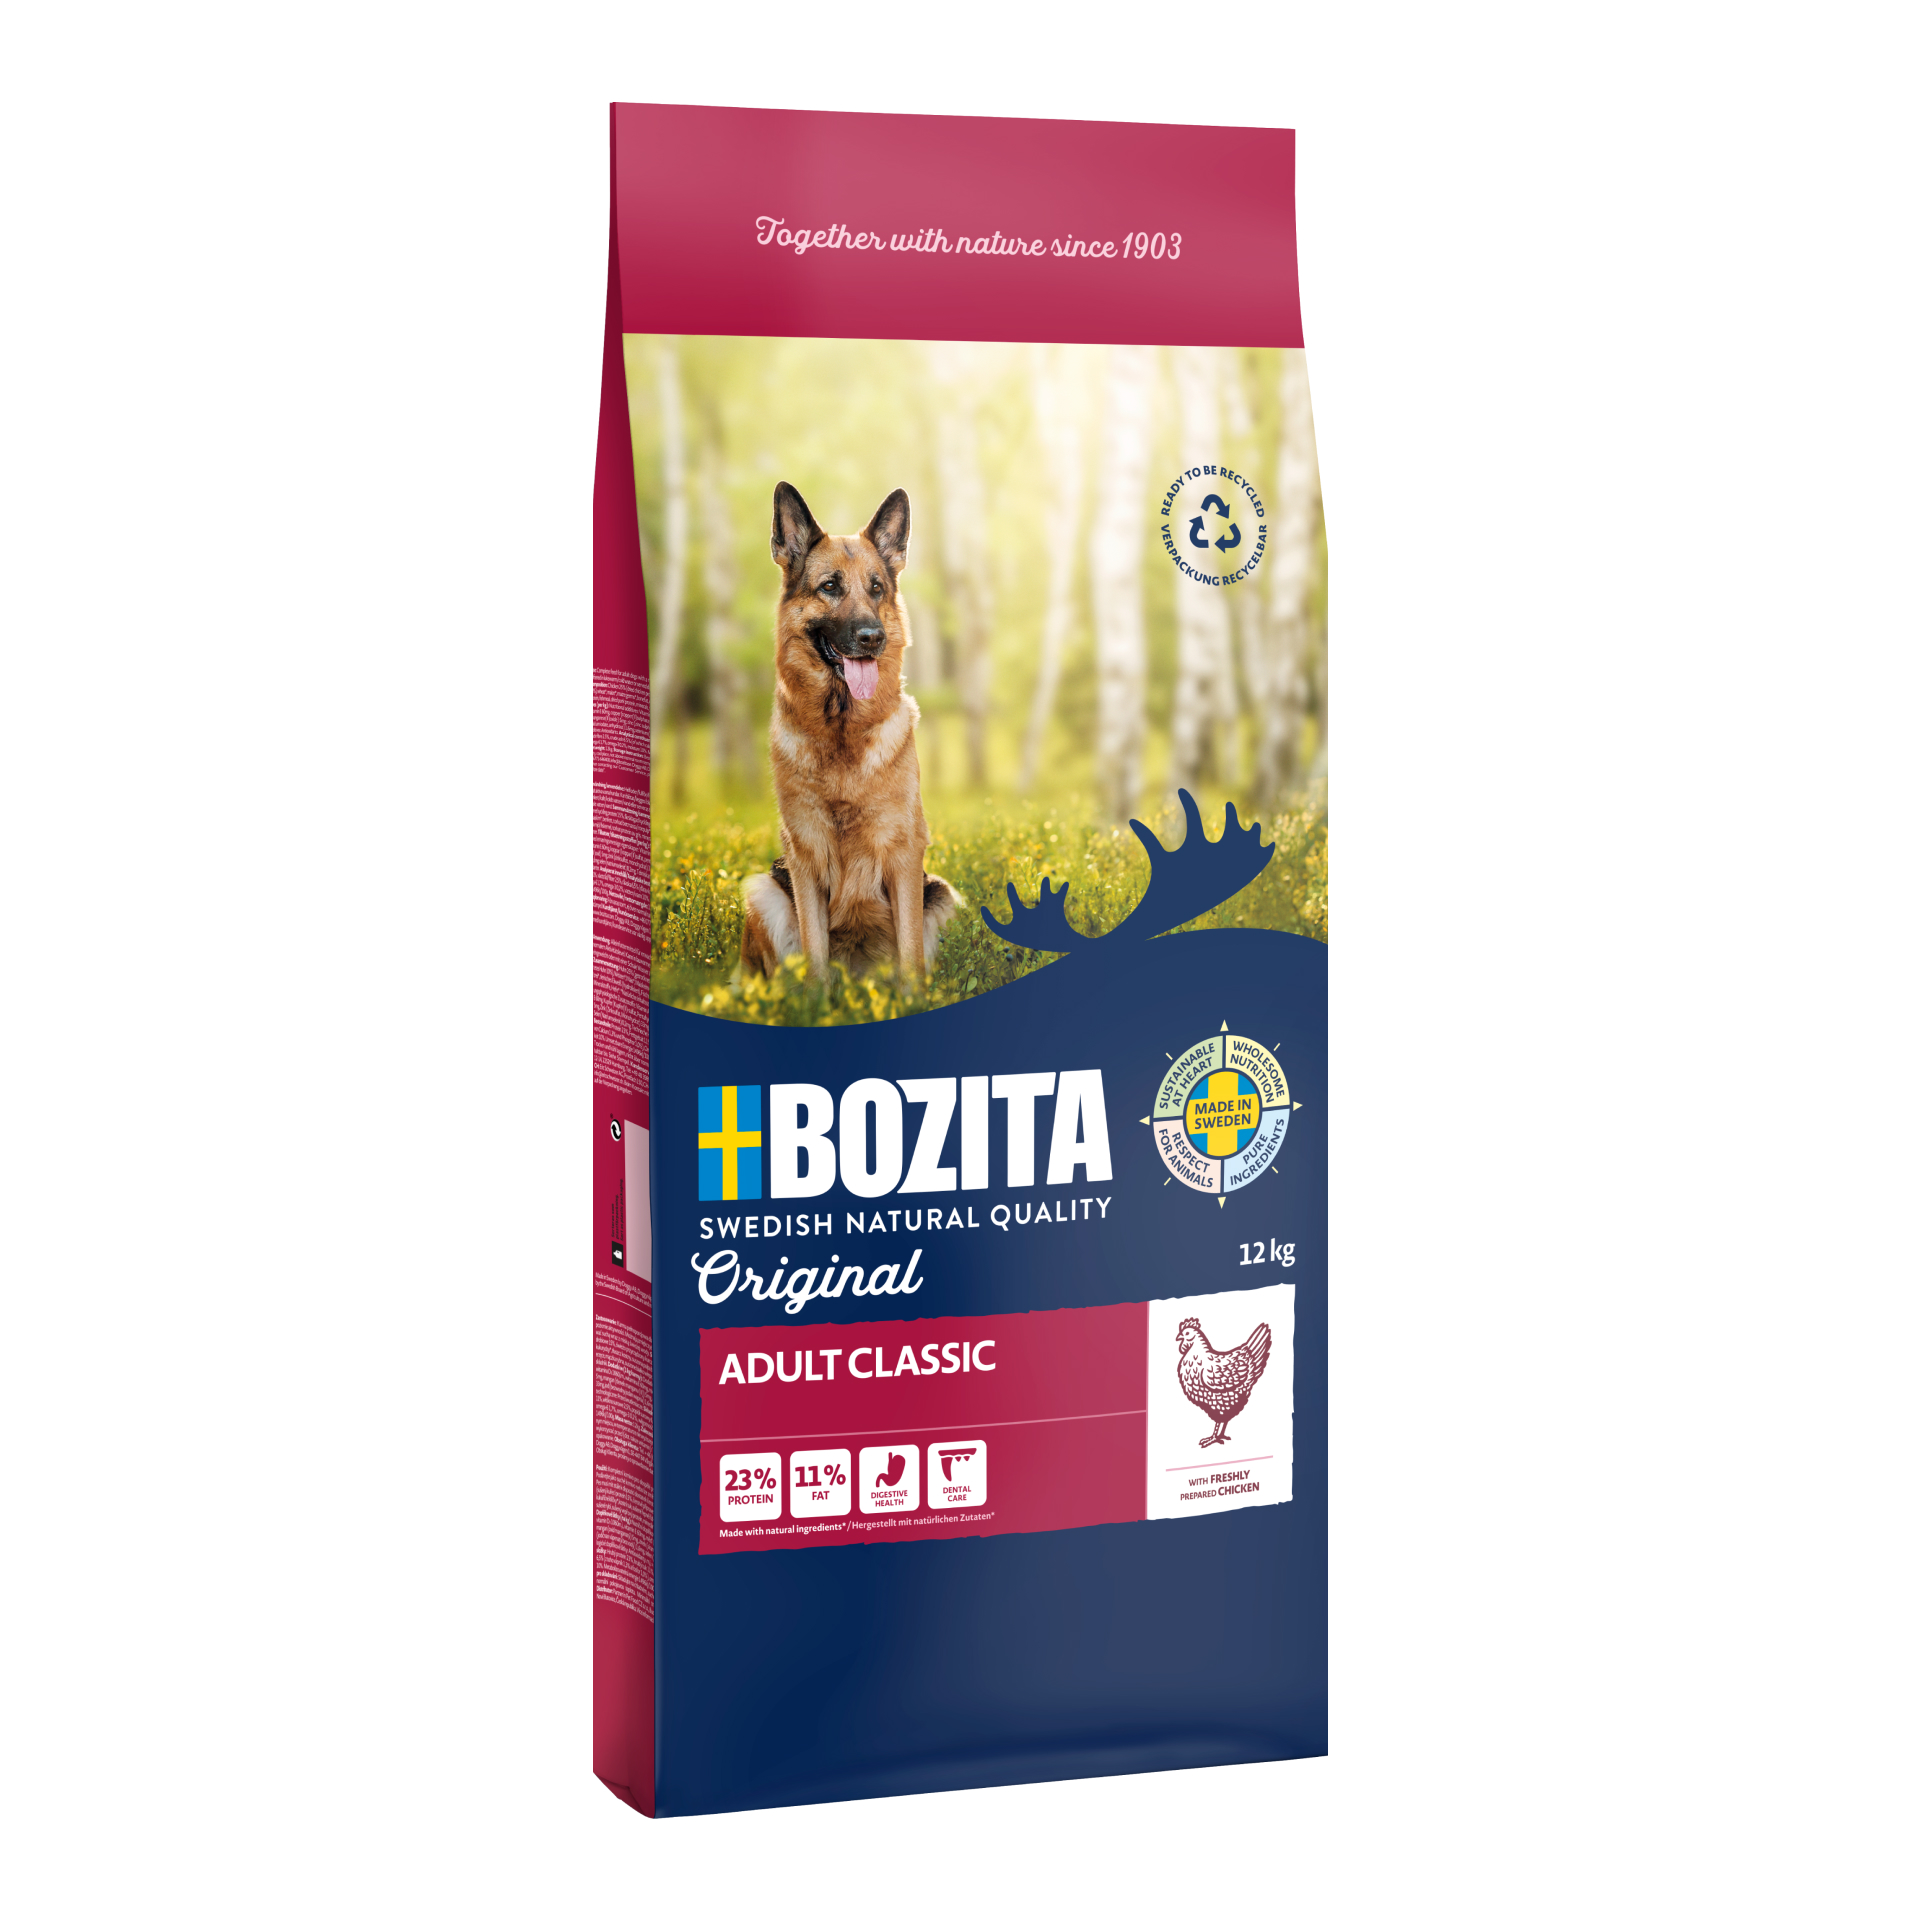 Bozita Original 12 kg 